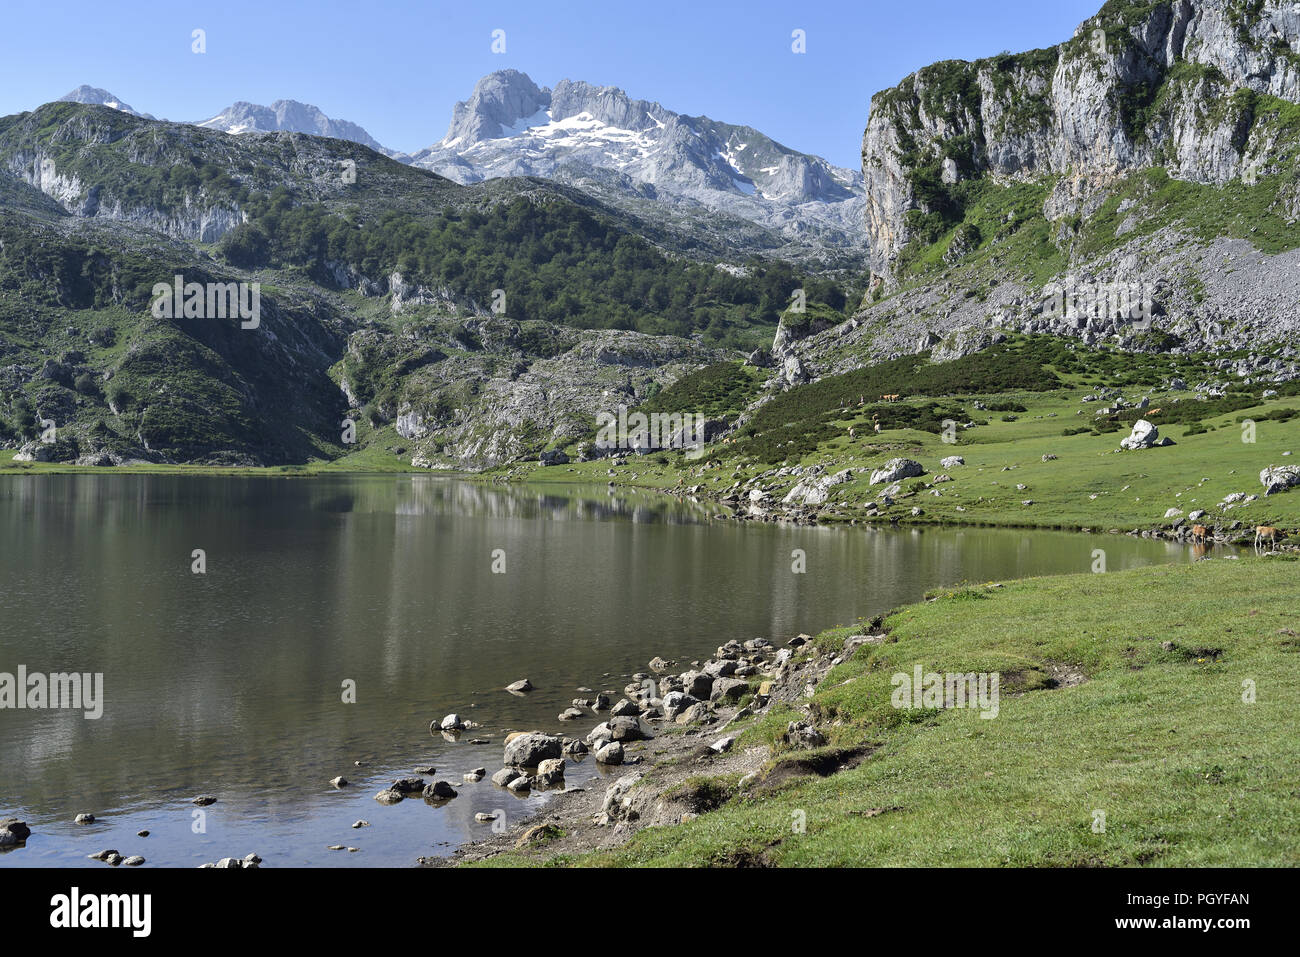 Par Lago de la Ercina, l'un des Lacs de Covadonga, dans les montagnes Picos de Europa dans les Asturies, dans le nord de l'Espagne Banque D'Images